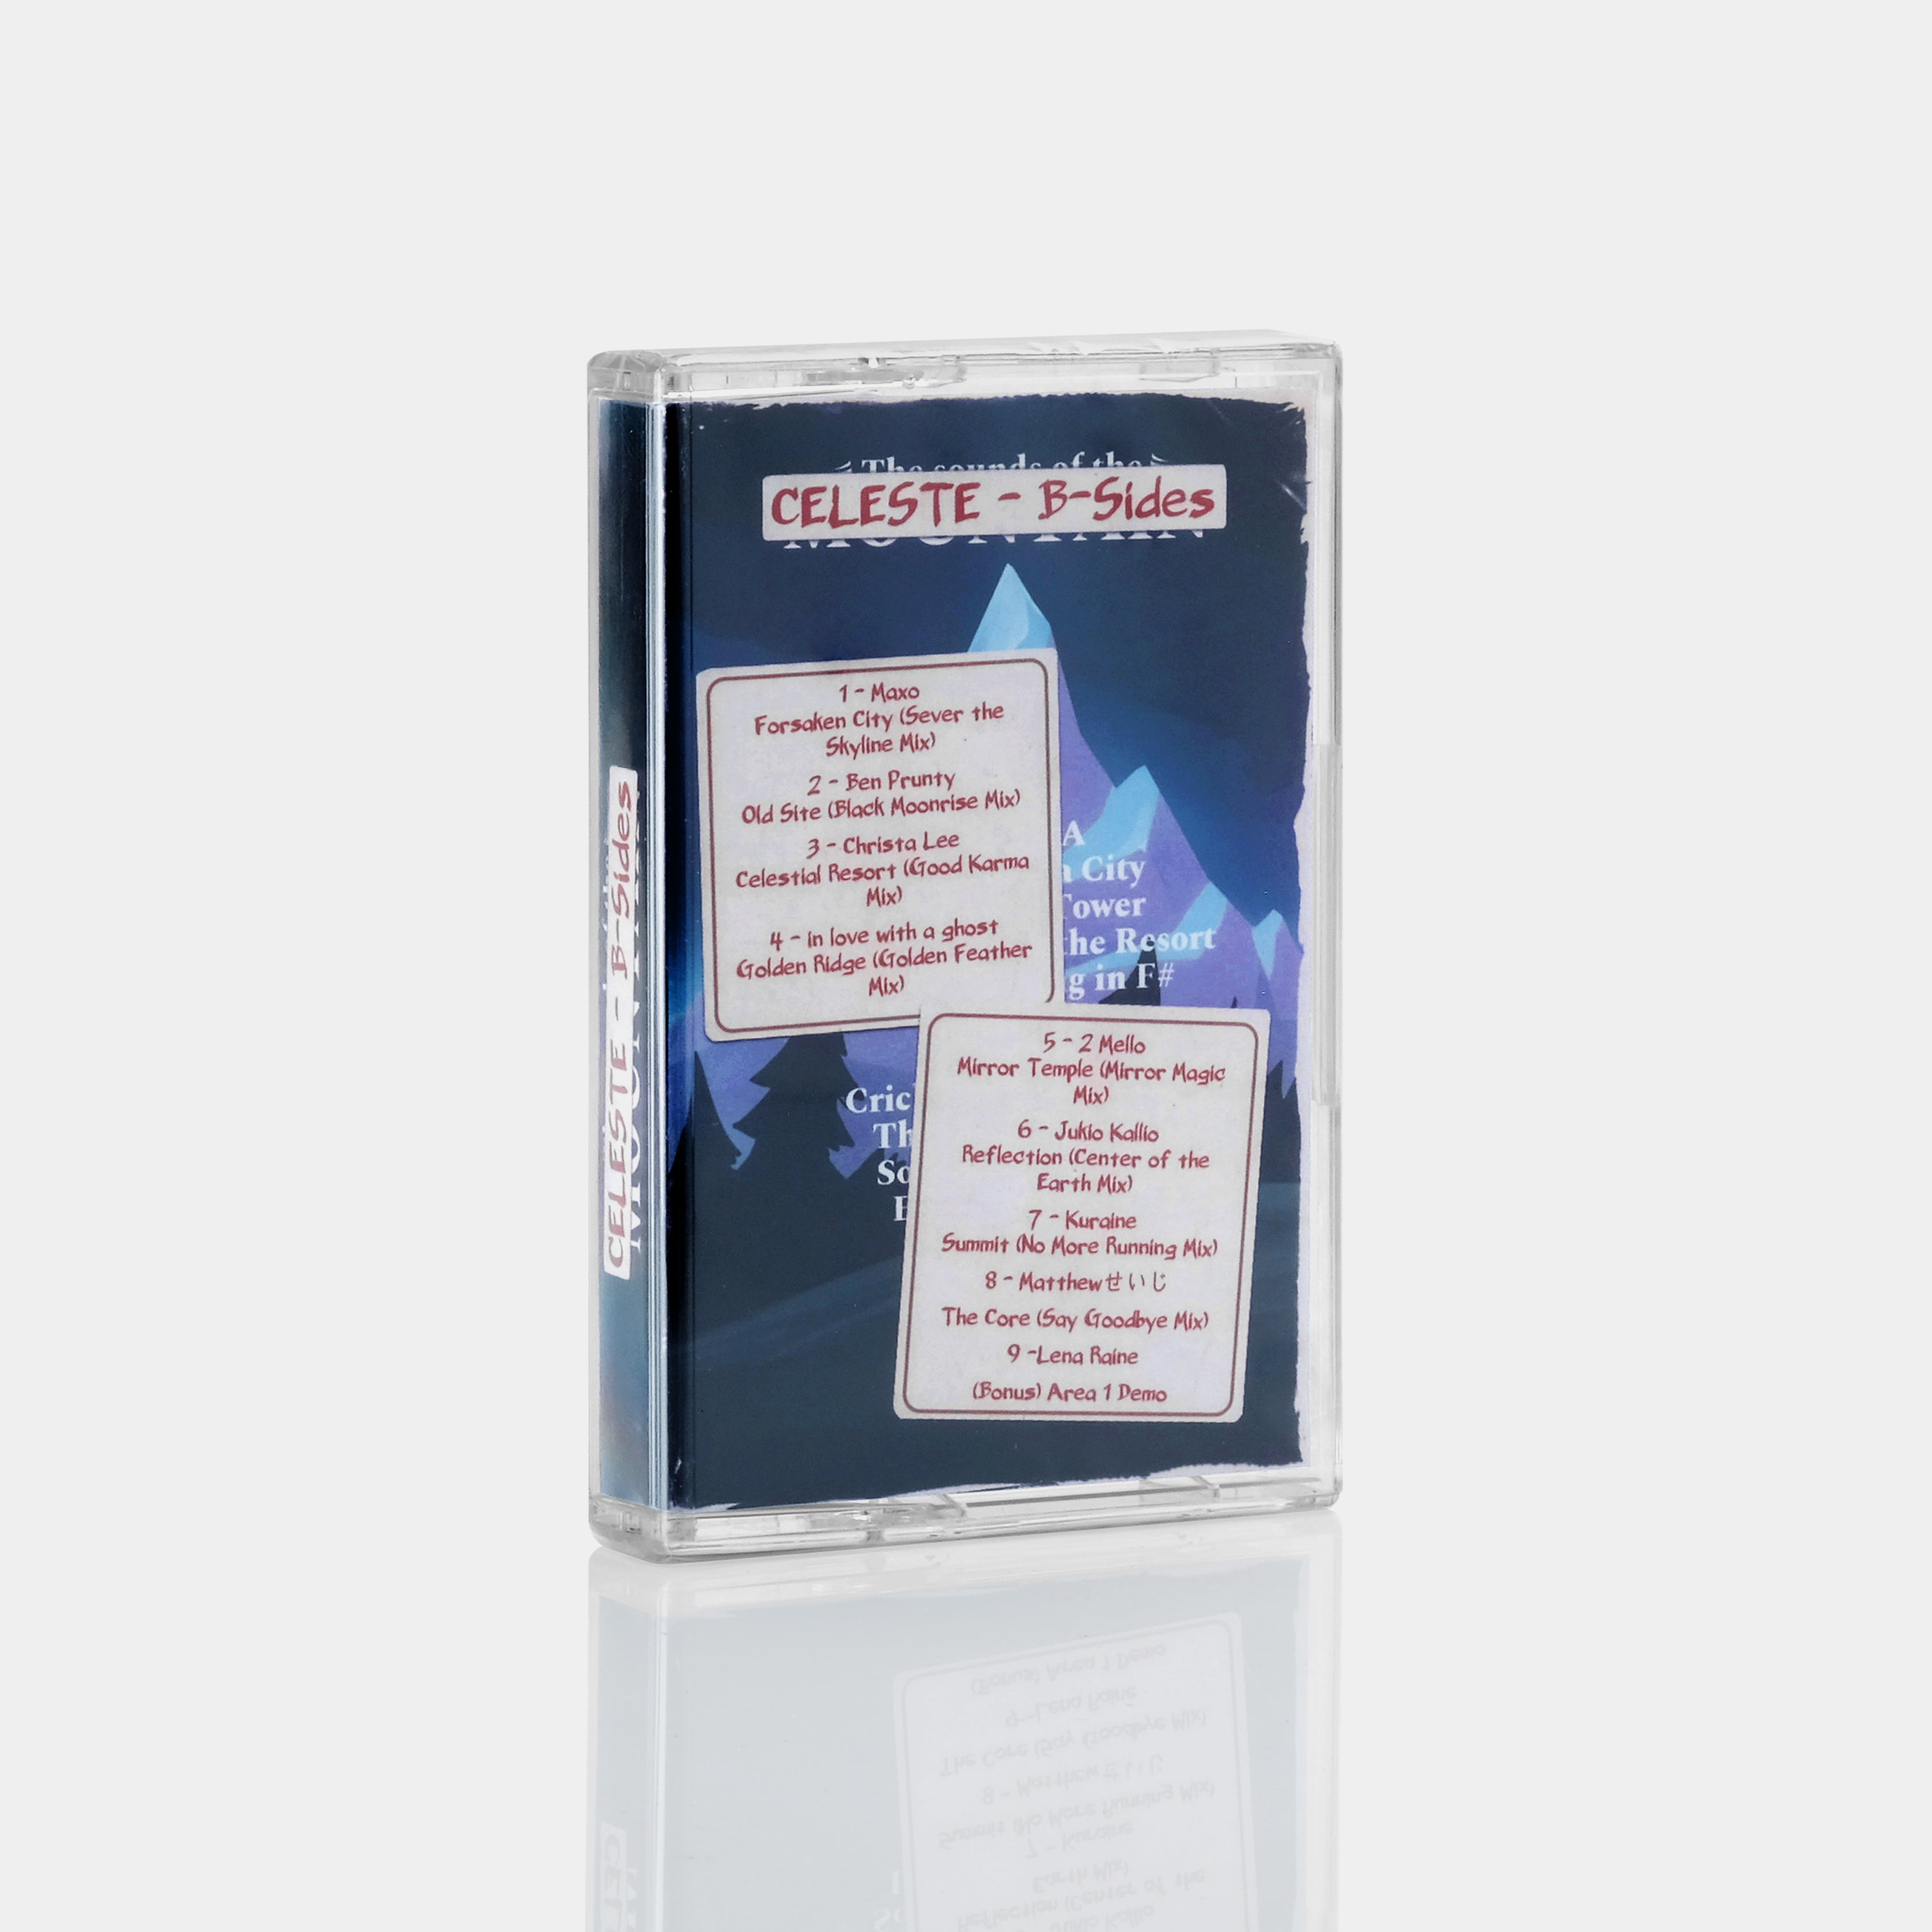 Celeste: B-Sides Cassette Tape